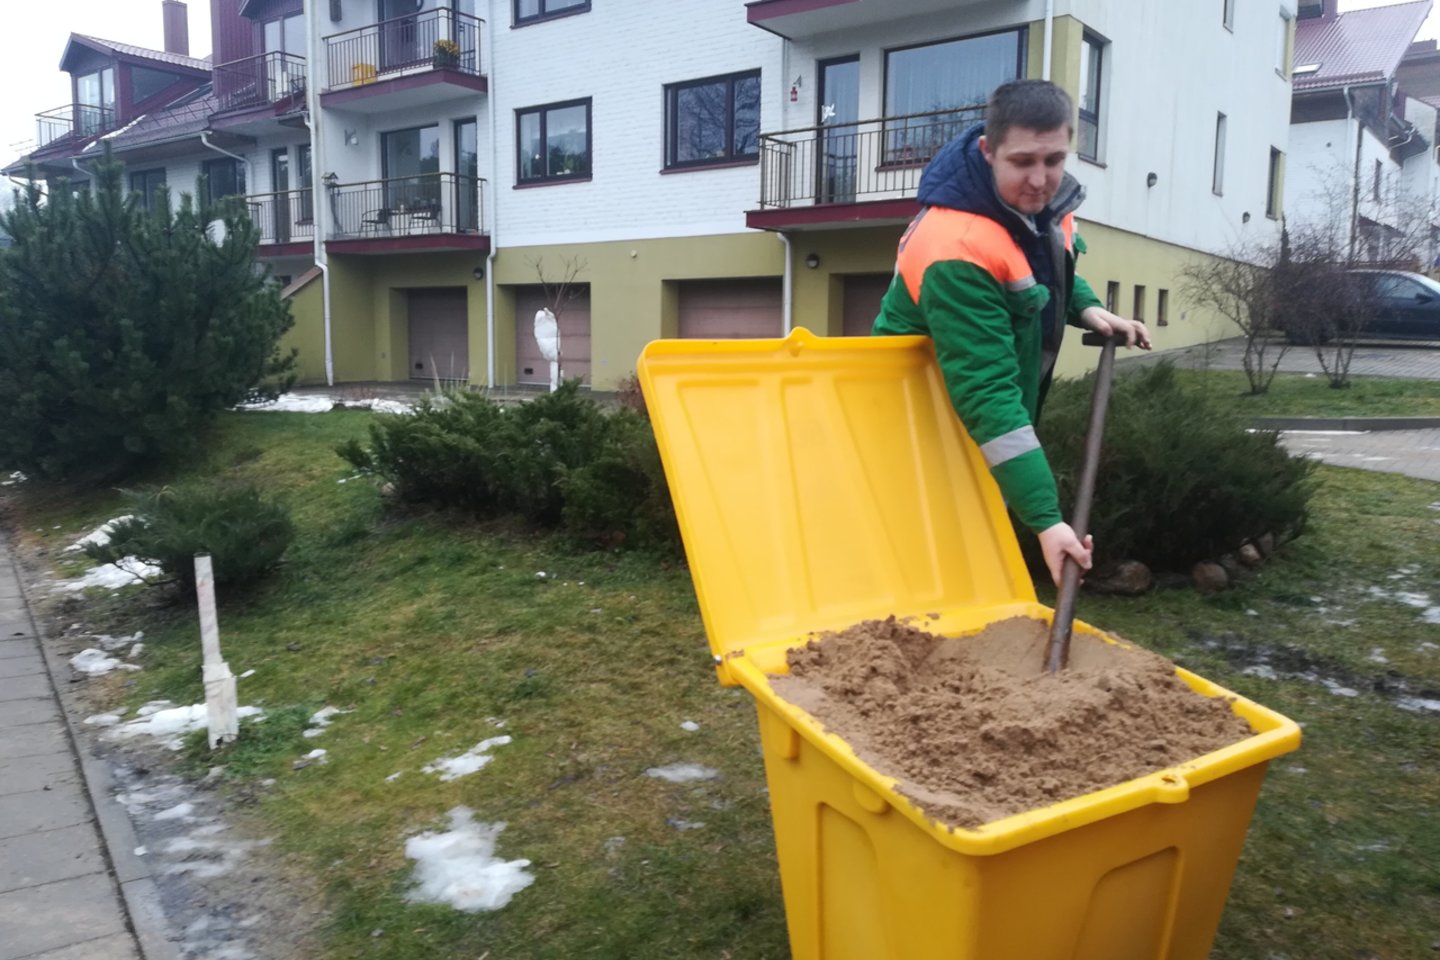  Vilniuje išdėstyta 60 dėžių su smėliu ir druska.<br>„Grinda“ nuotr.